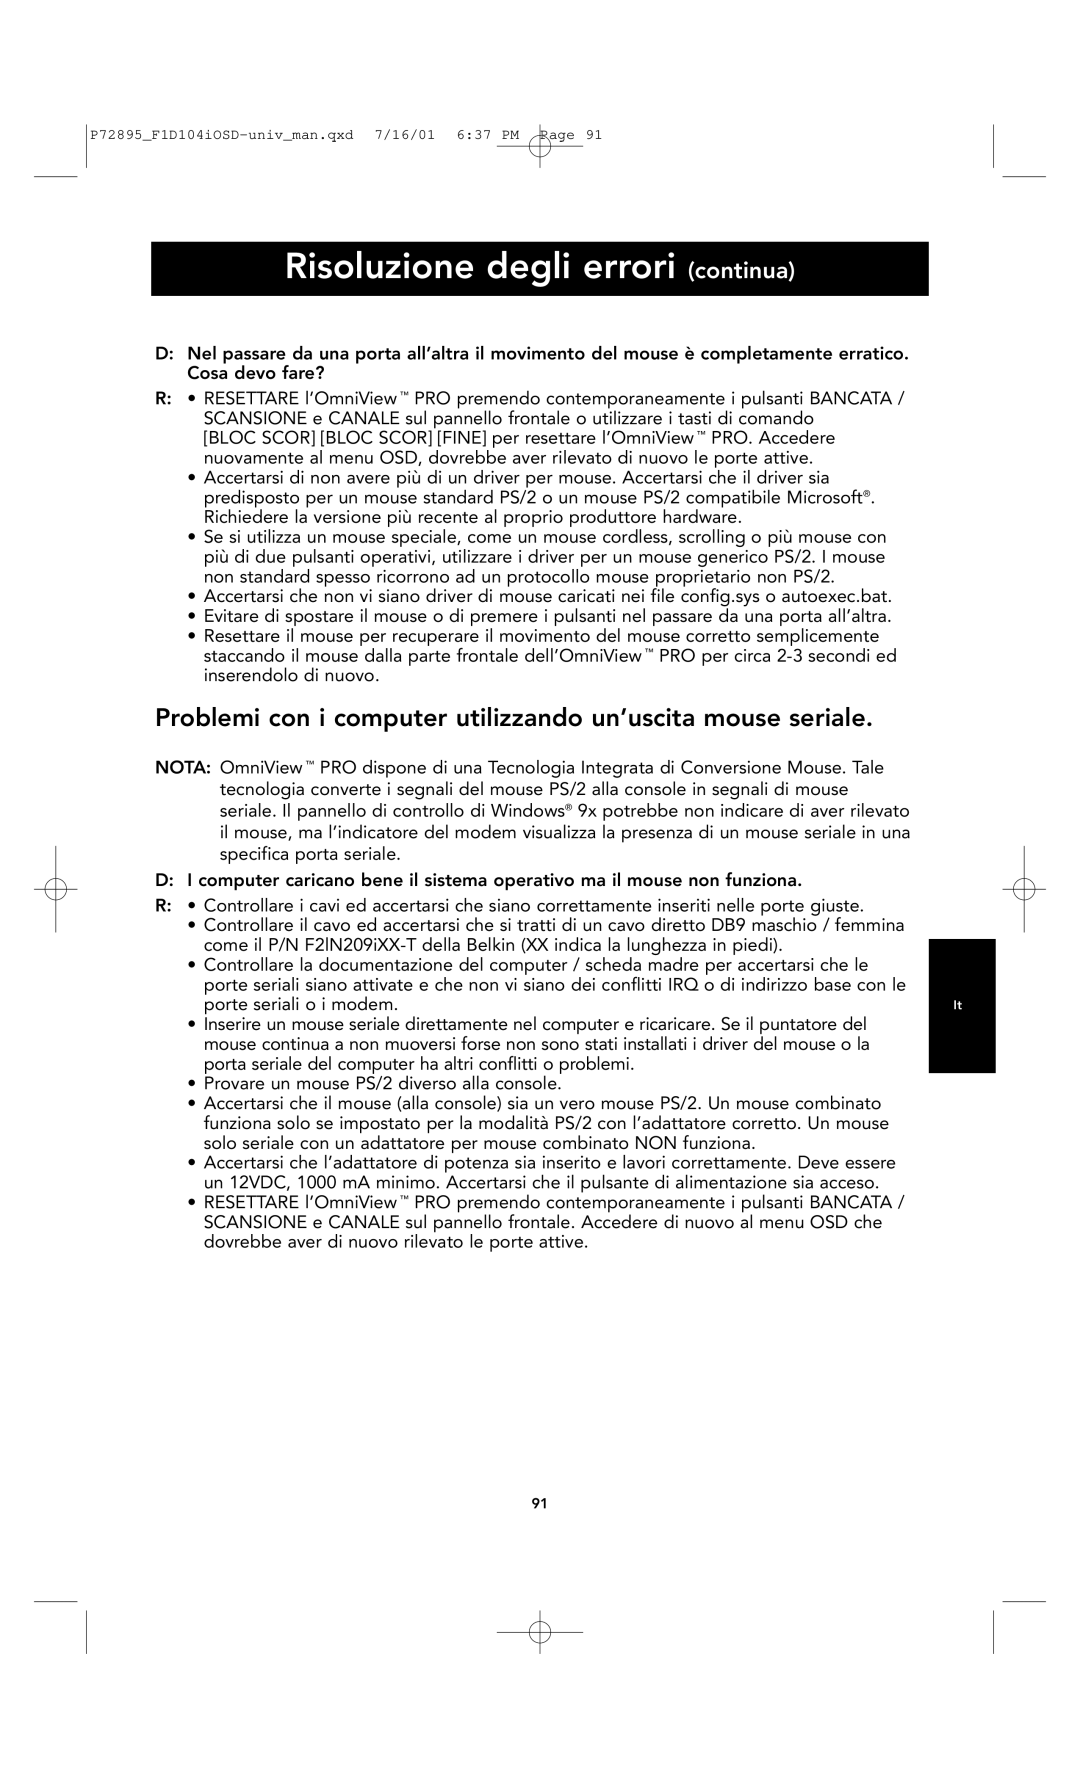 Belkin F1D104-OSD user manual Problemi con i computer utilizzando un’uscita mouse seriale, porte seriali o i modem 